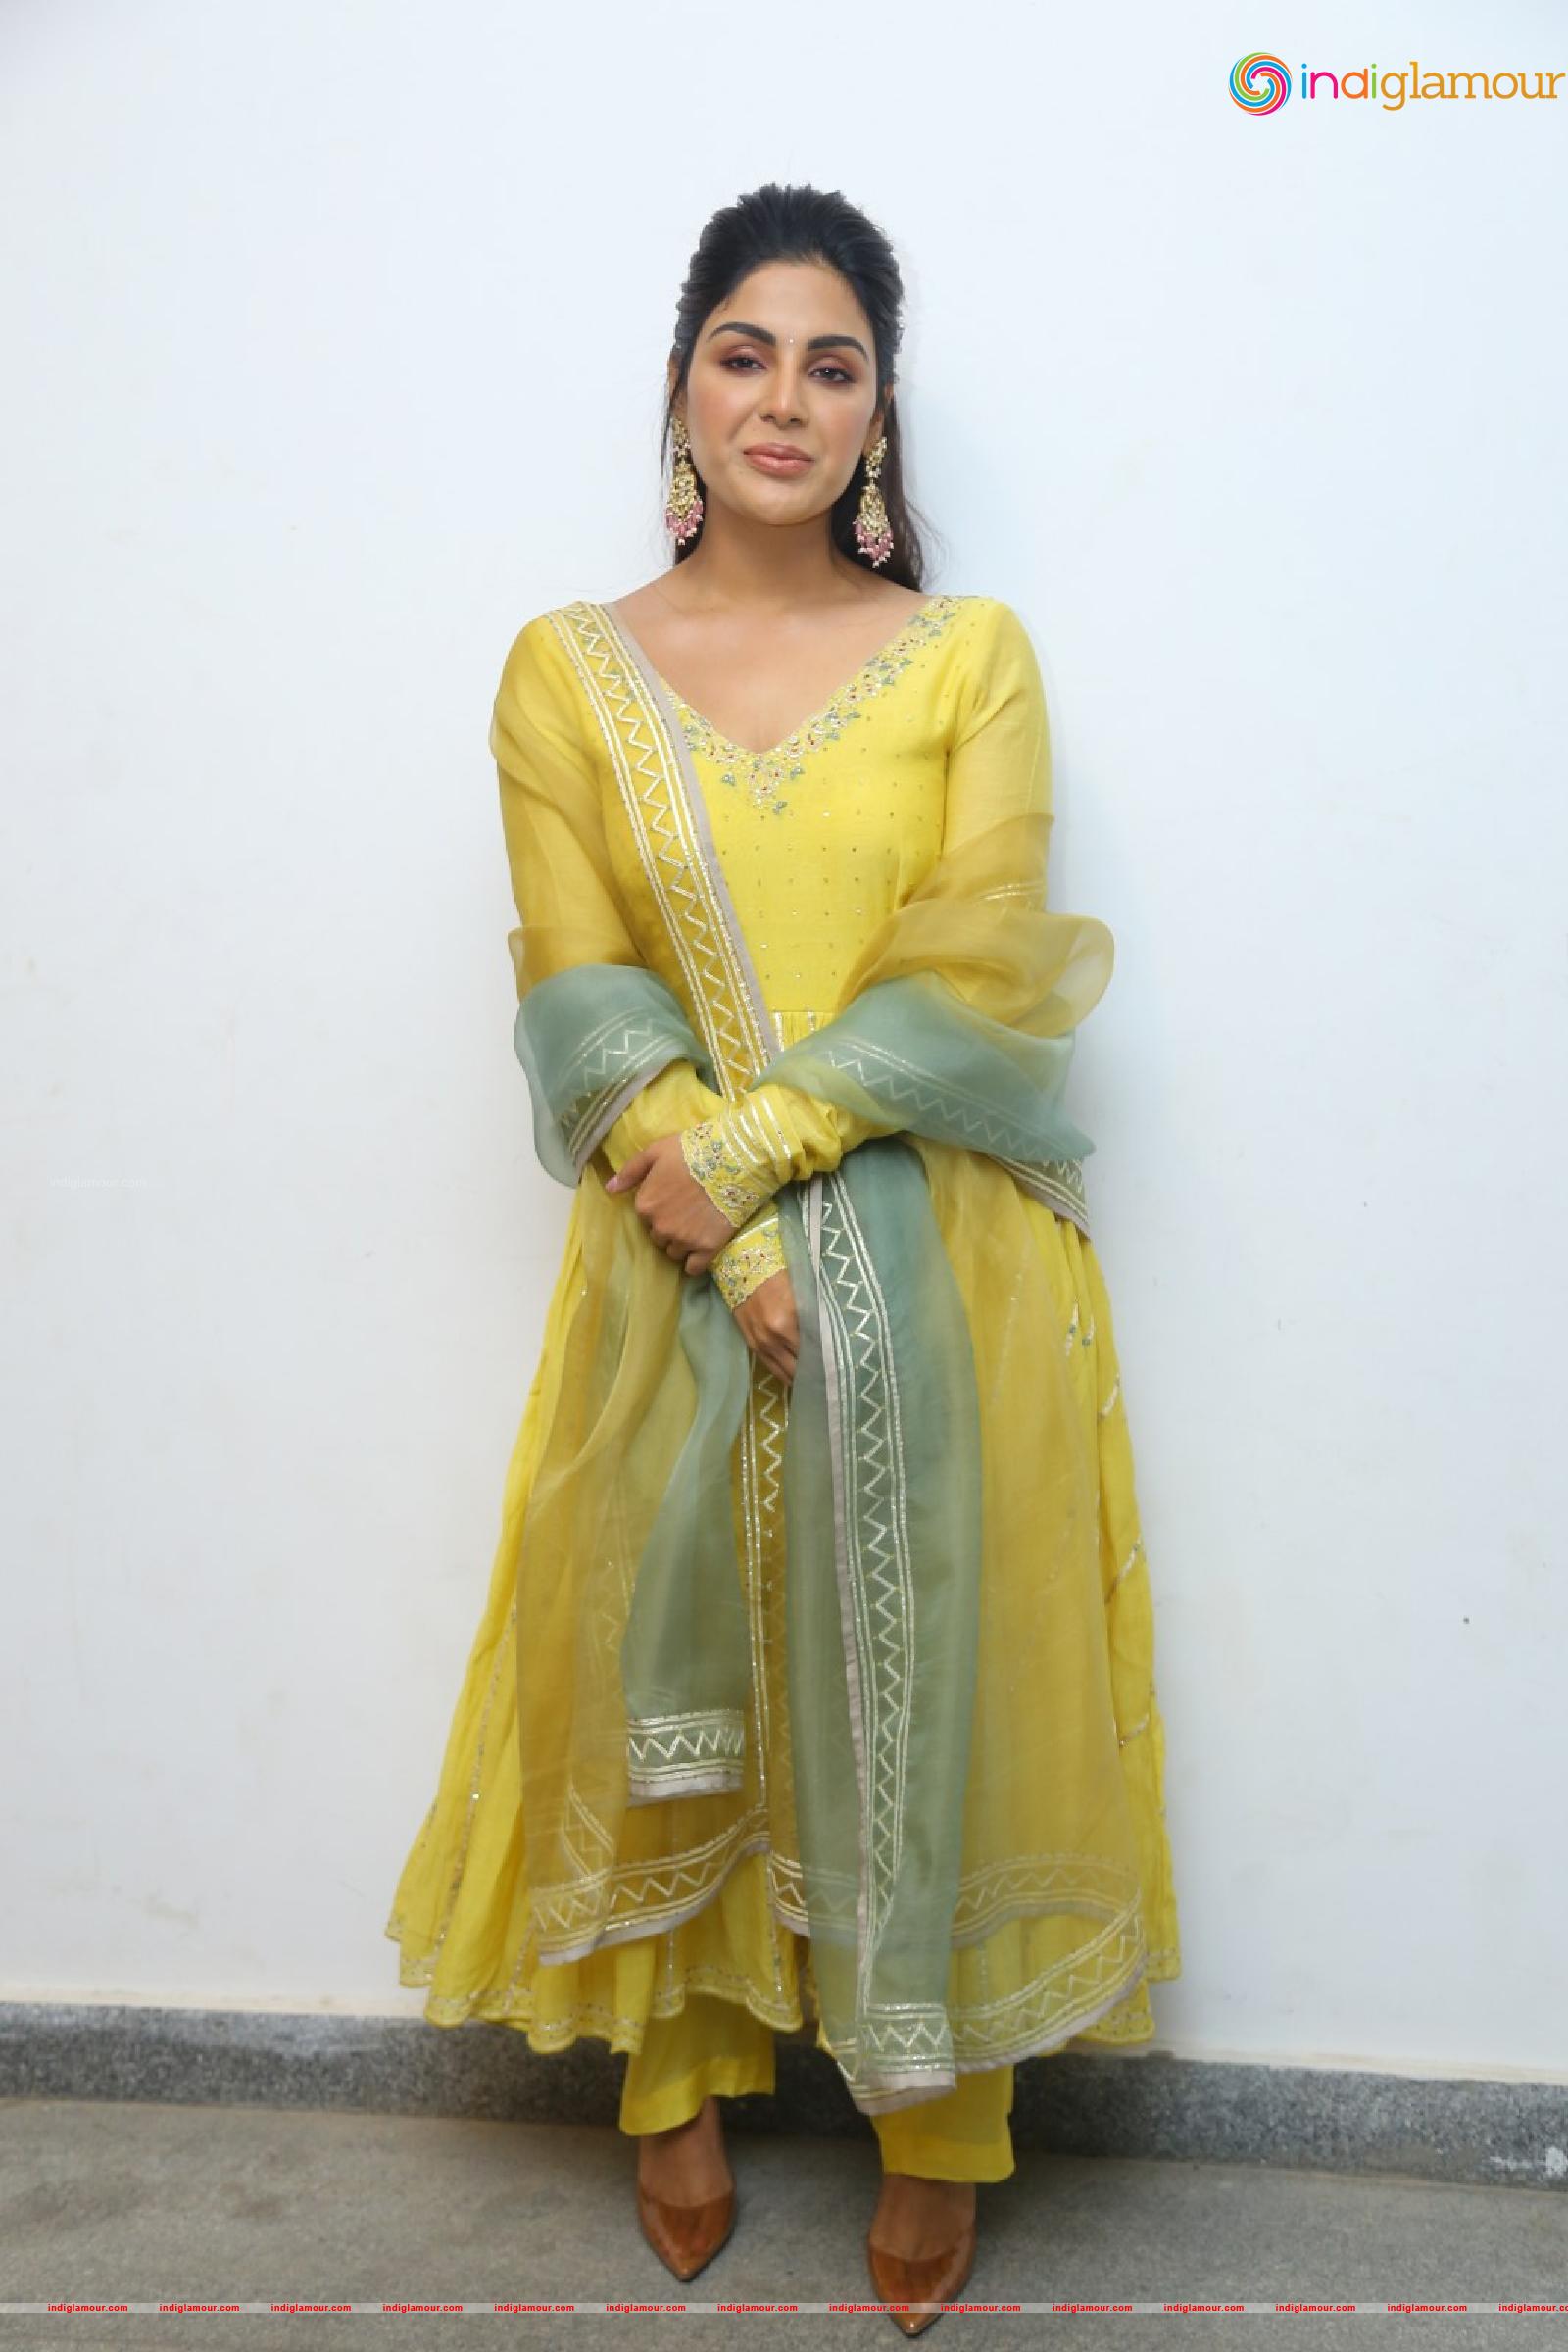 Samyuktha Menon Actress HD photos,images,pics and stills-indiglamour ...